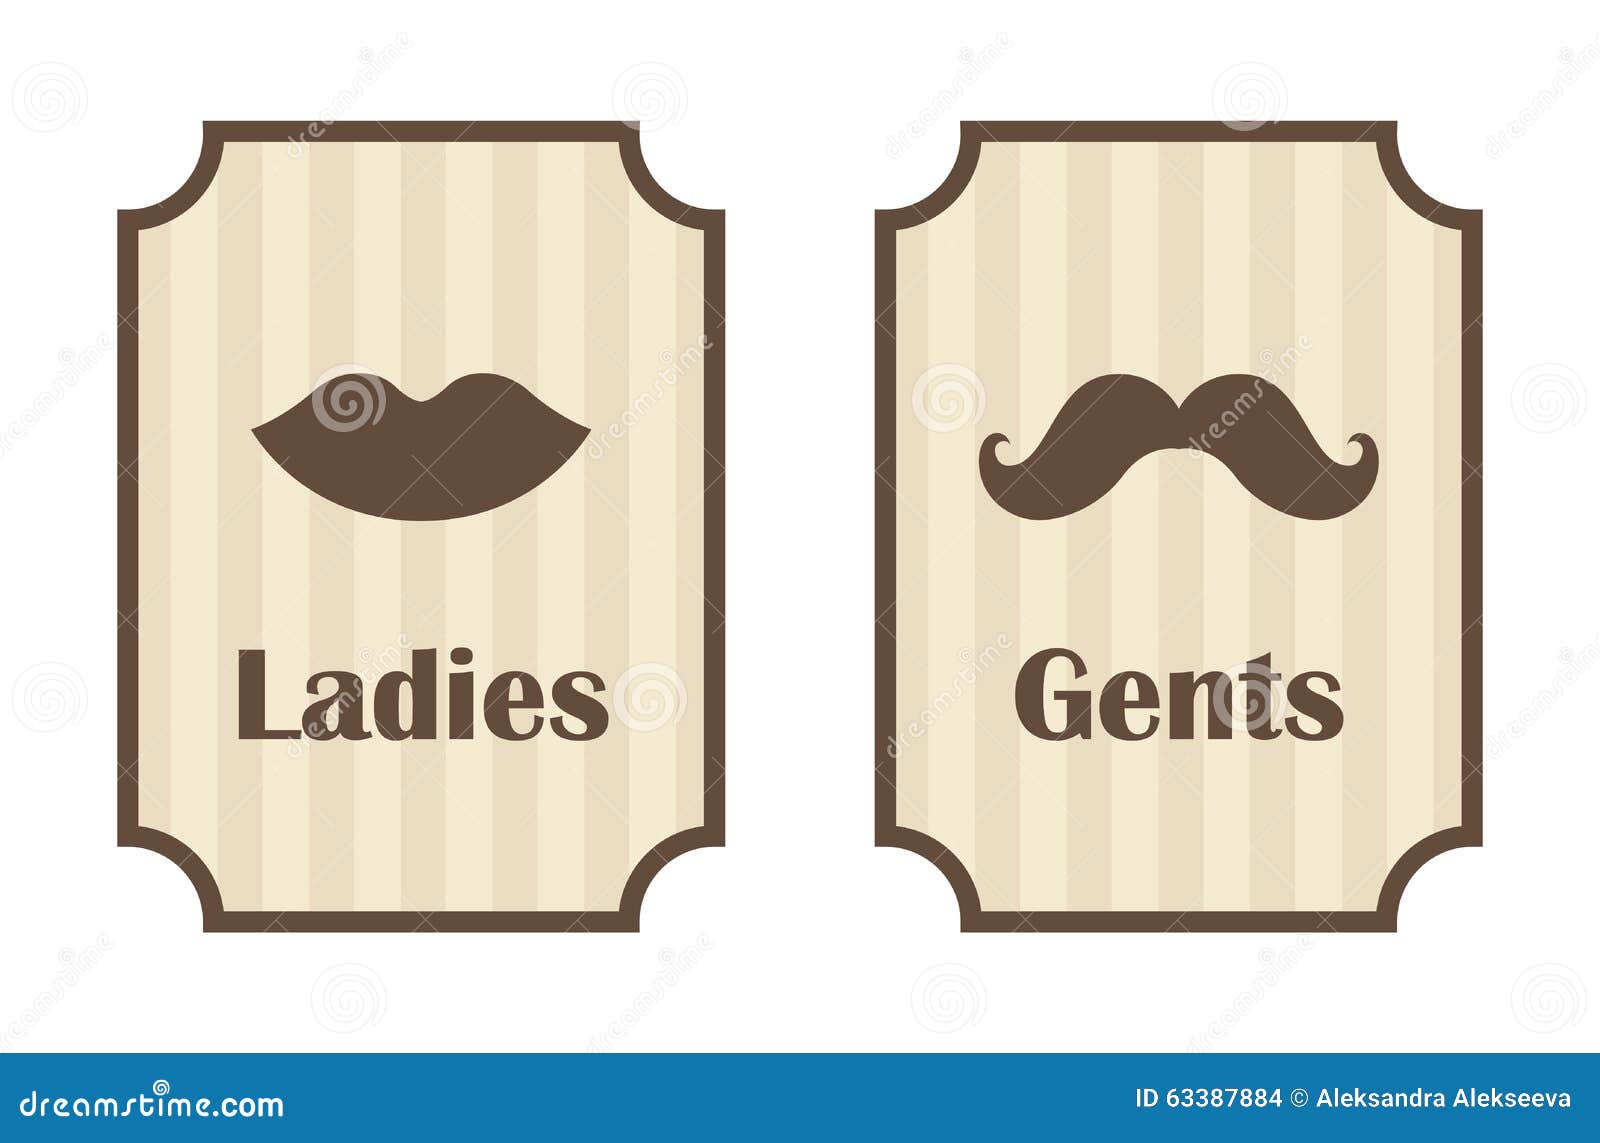 Ladies And Gents Bathroom Signs Kts S focus for Ladies And Gents Bathroom Signs for Your home